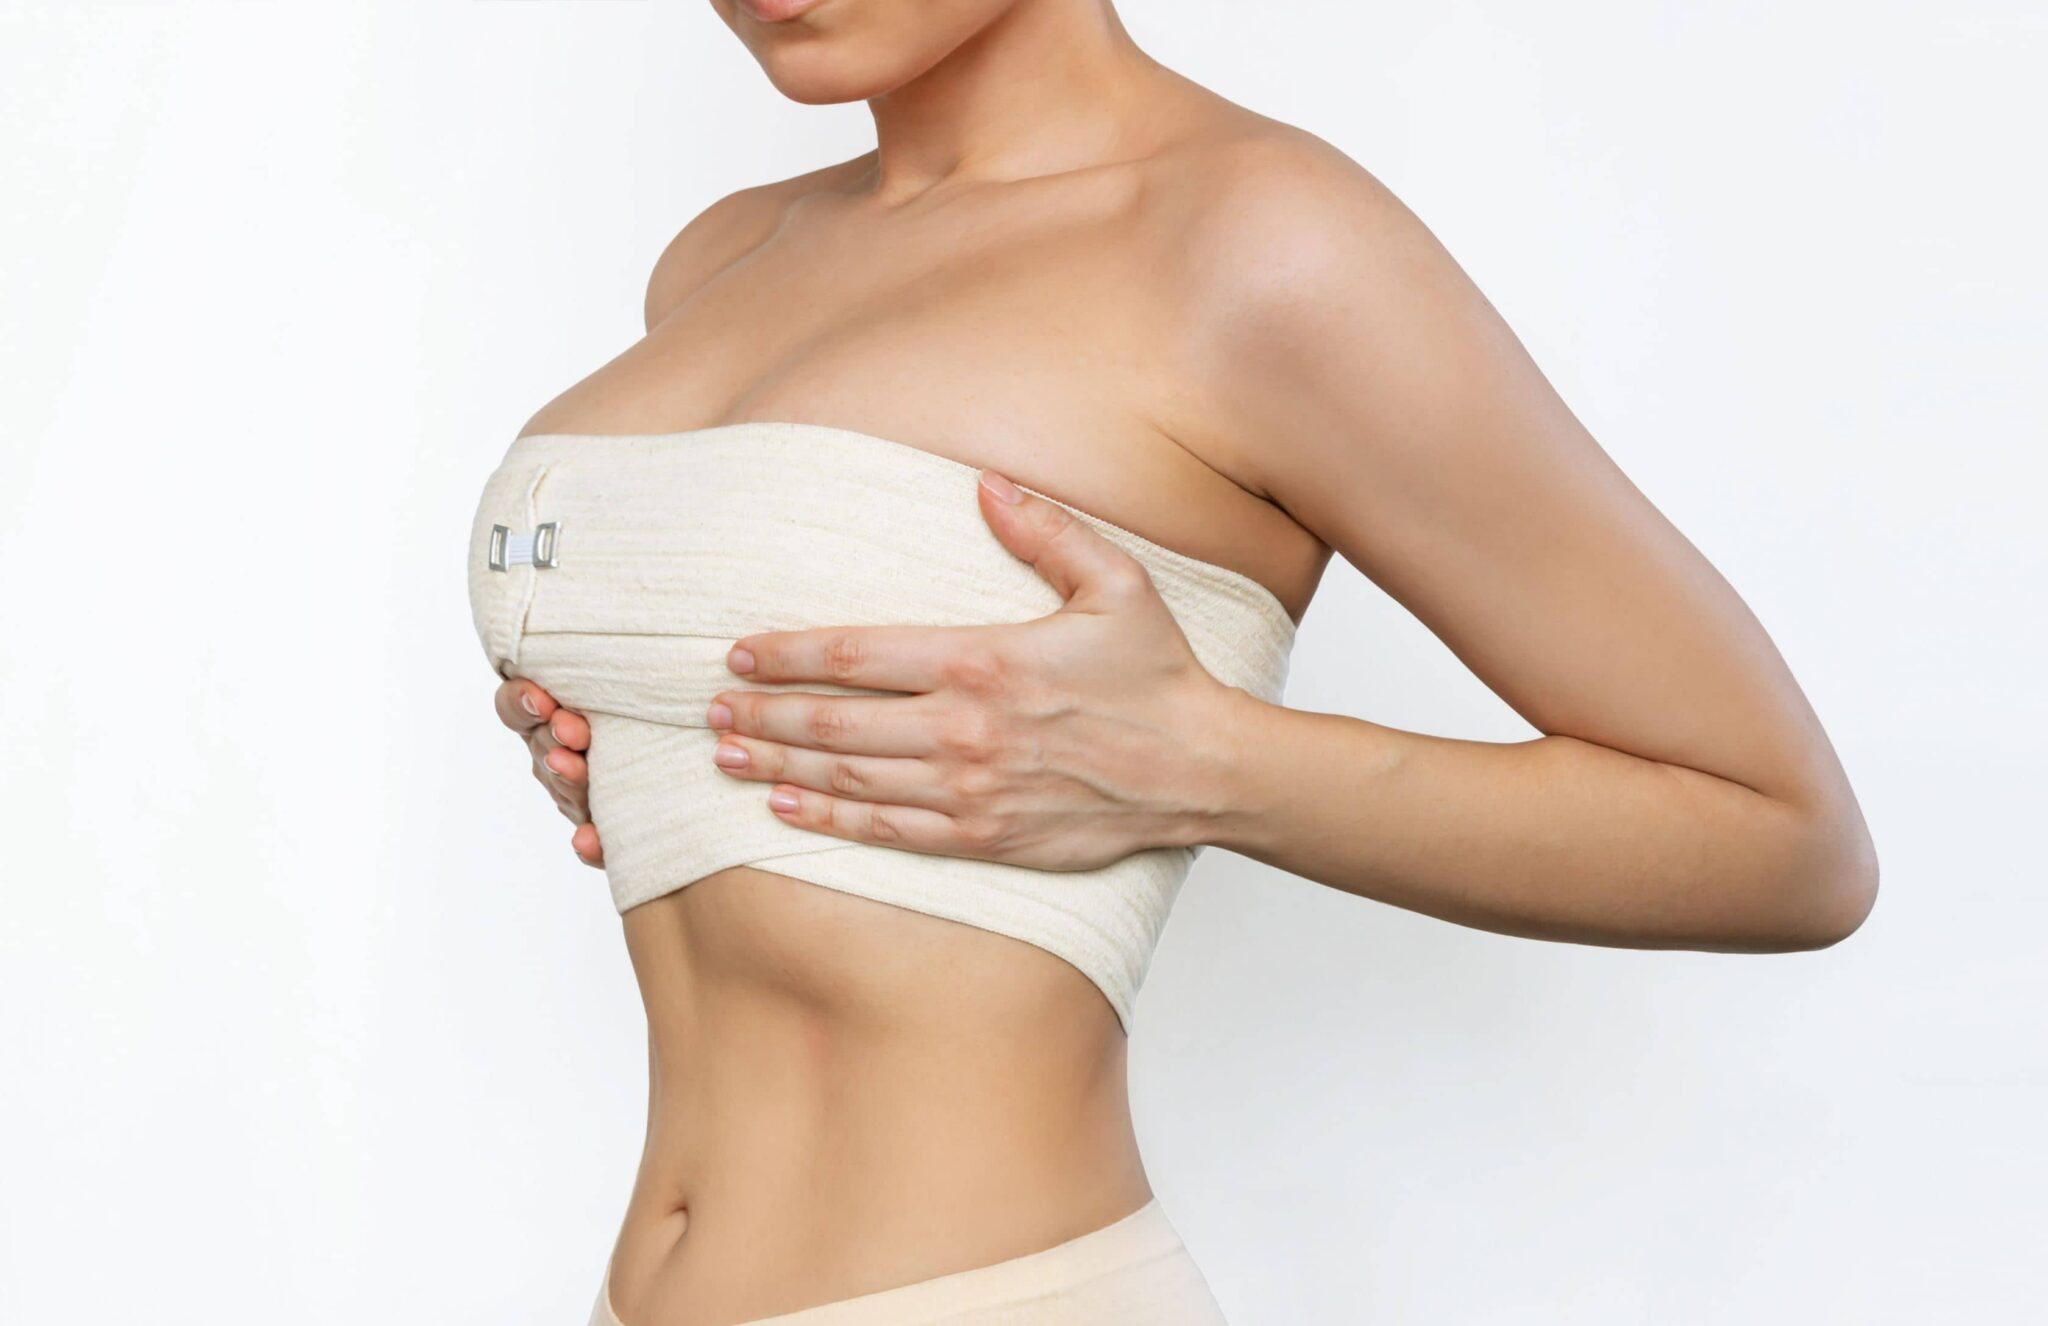 Les résultats de l’augmentation mammaire paraissent-ils naturels ? | Dr Petit | Paris